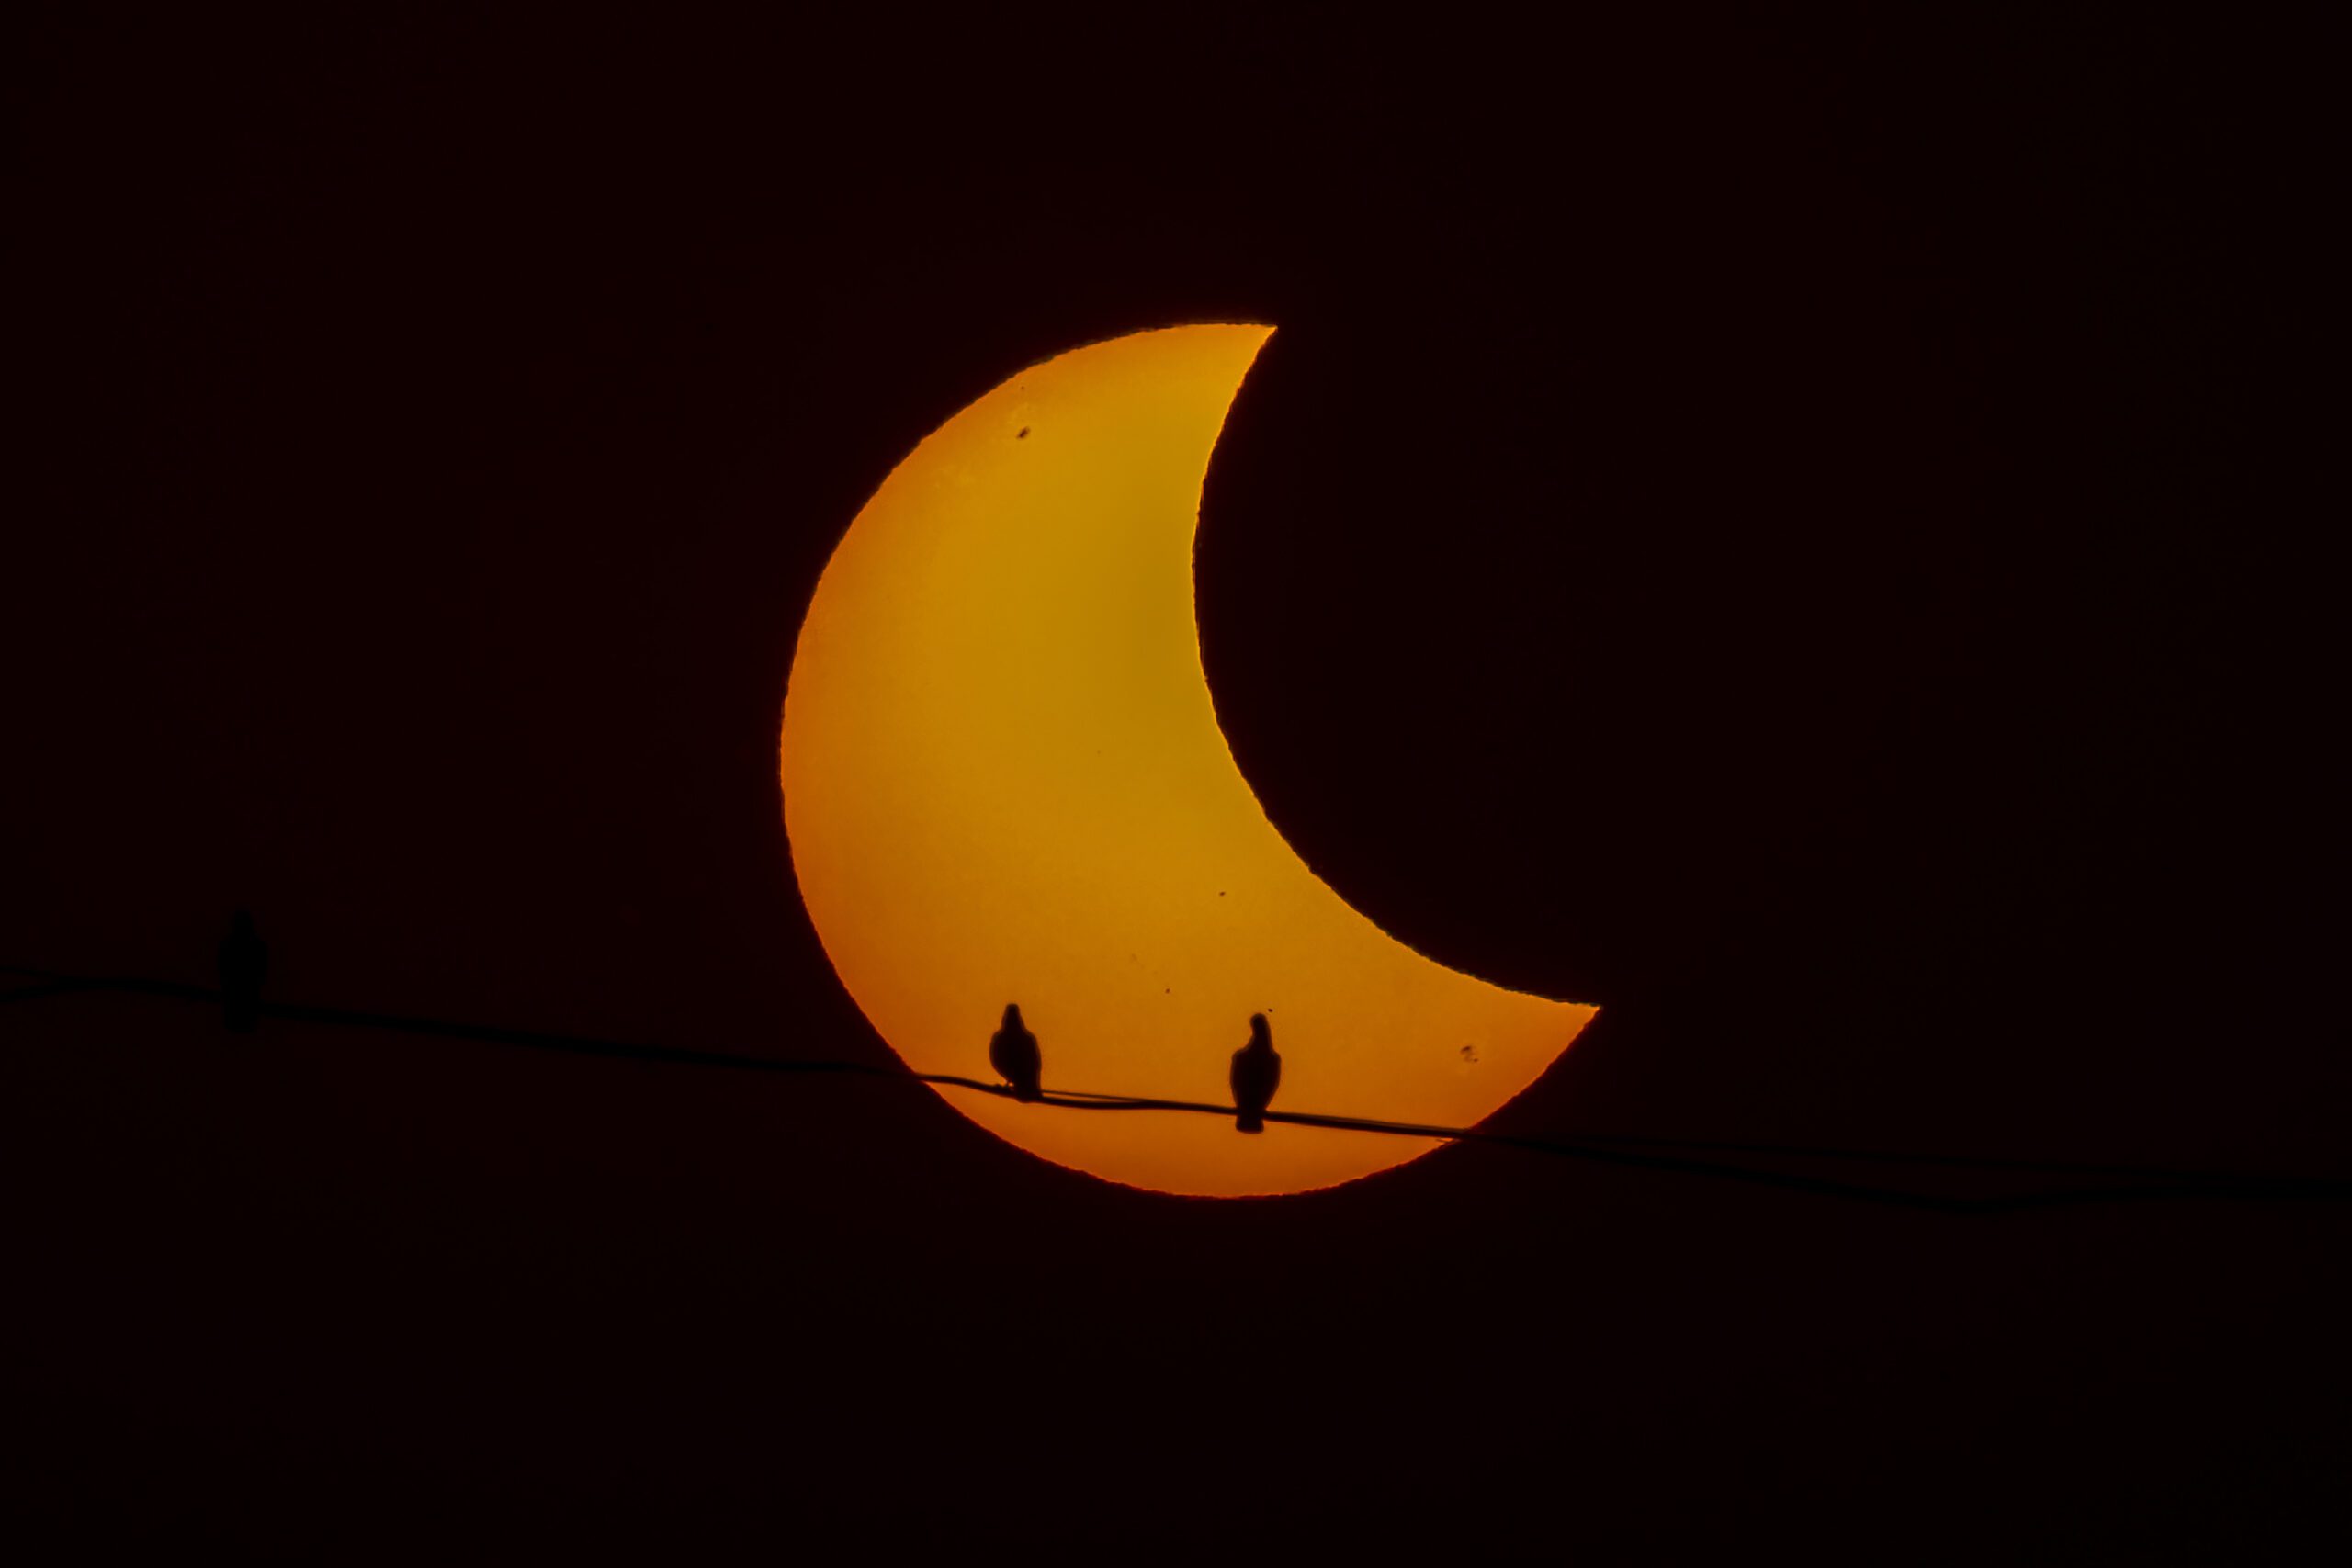 Повне сонячне затемнення: як воно впливає на світ довкола  